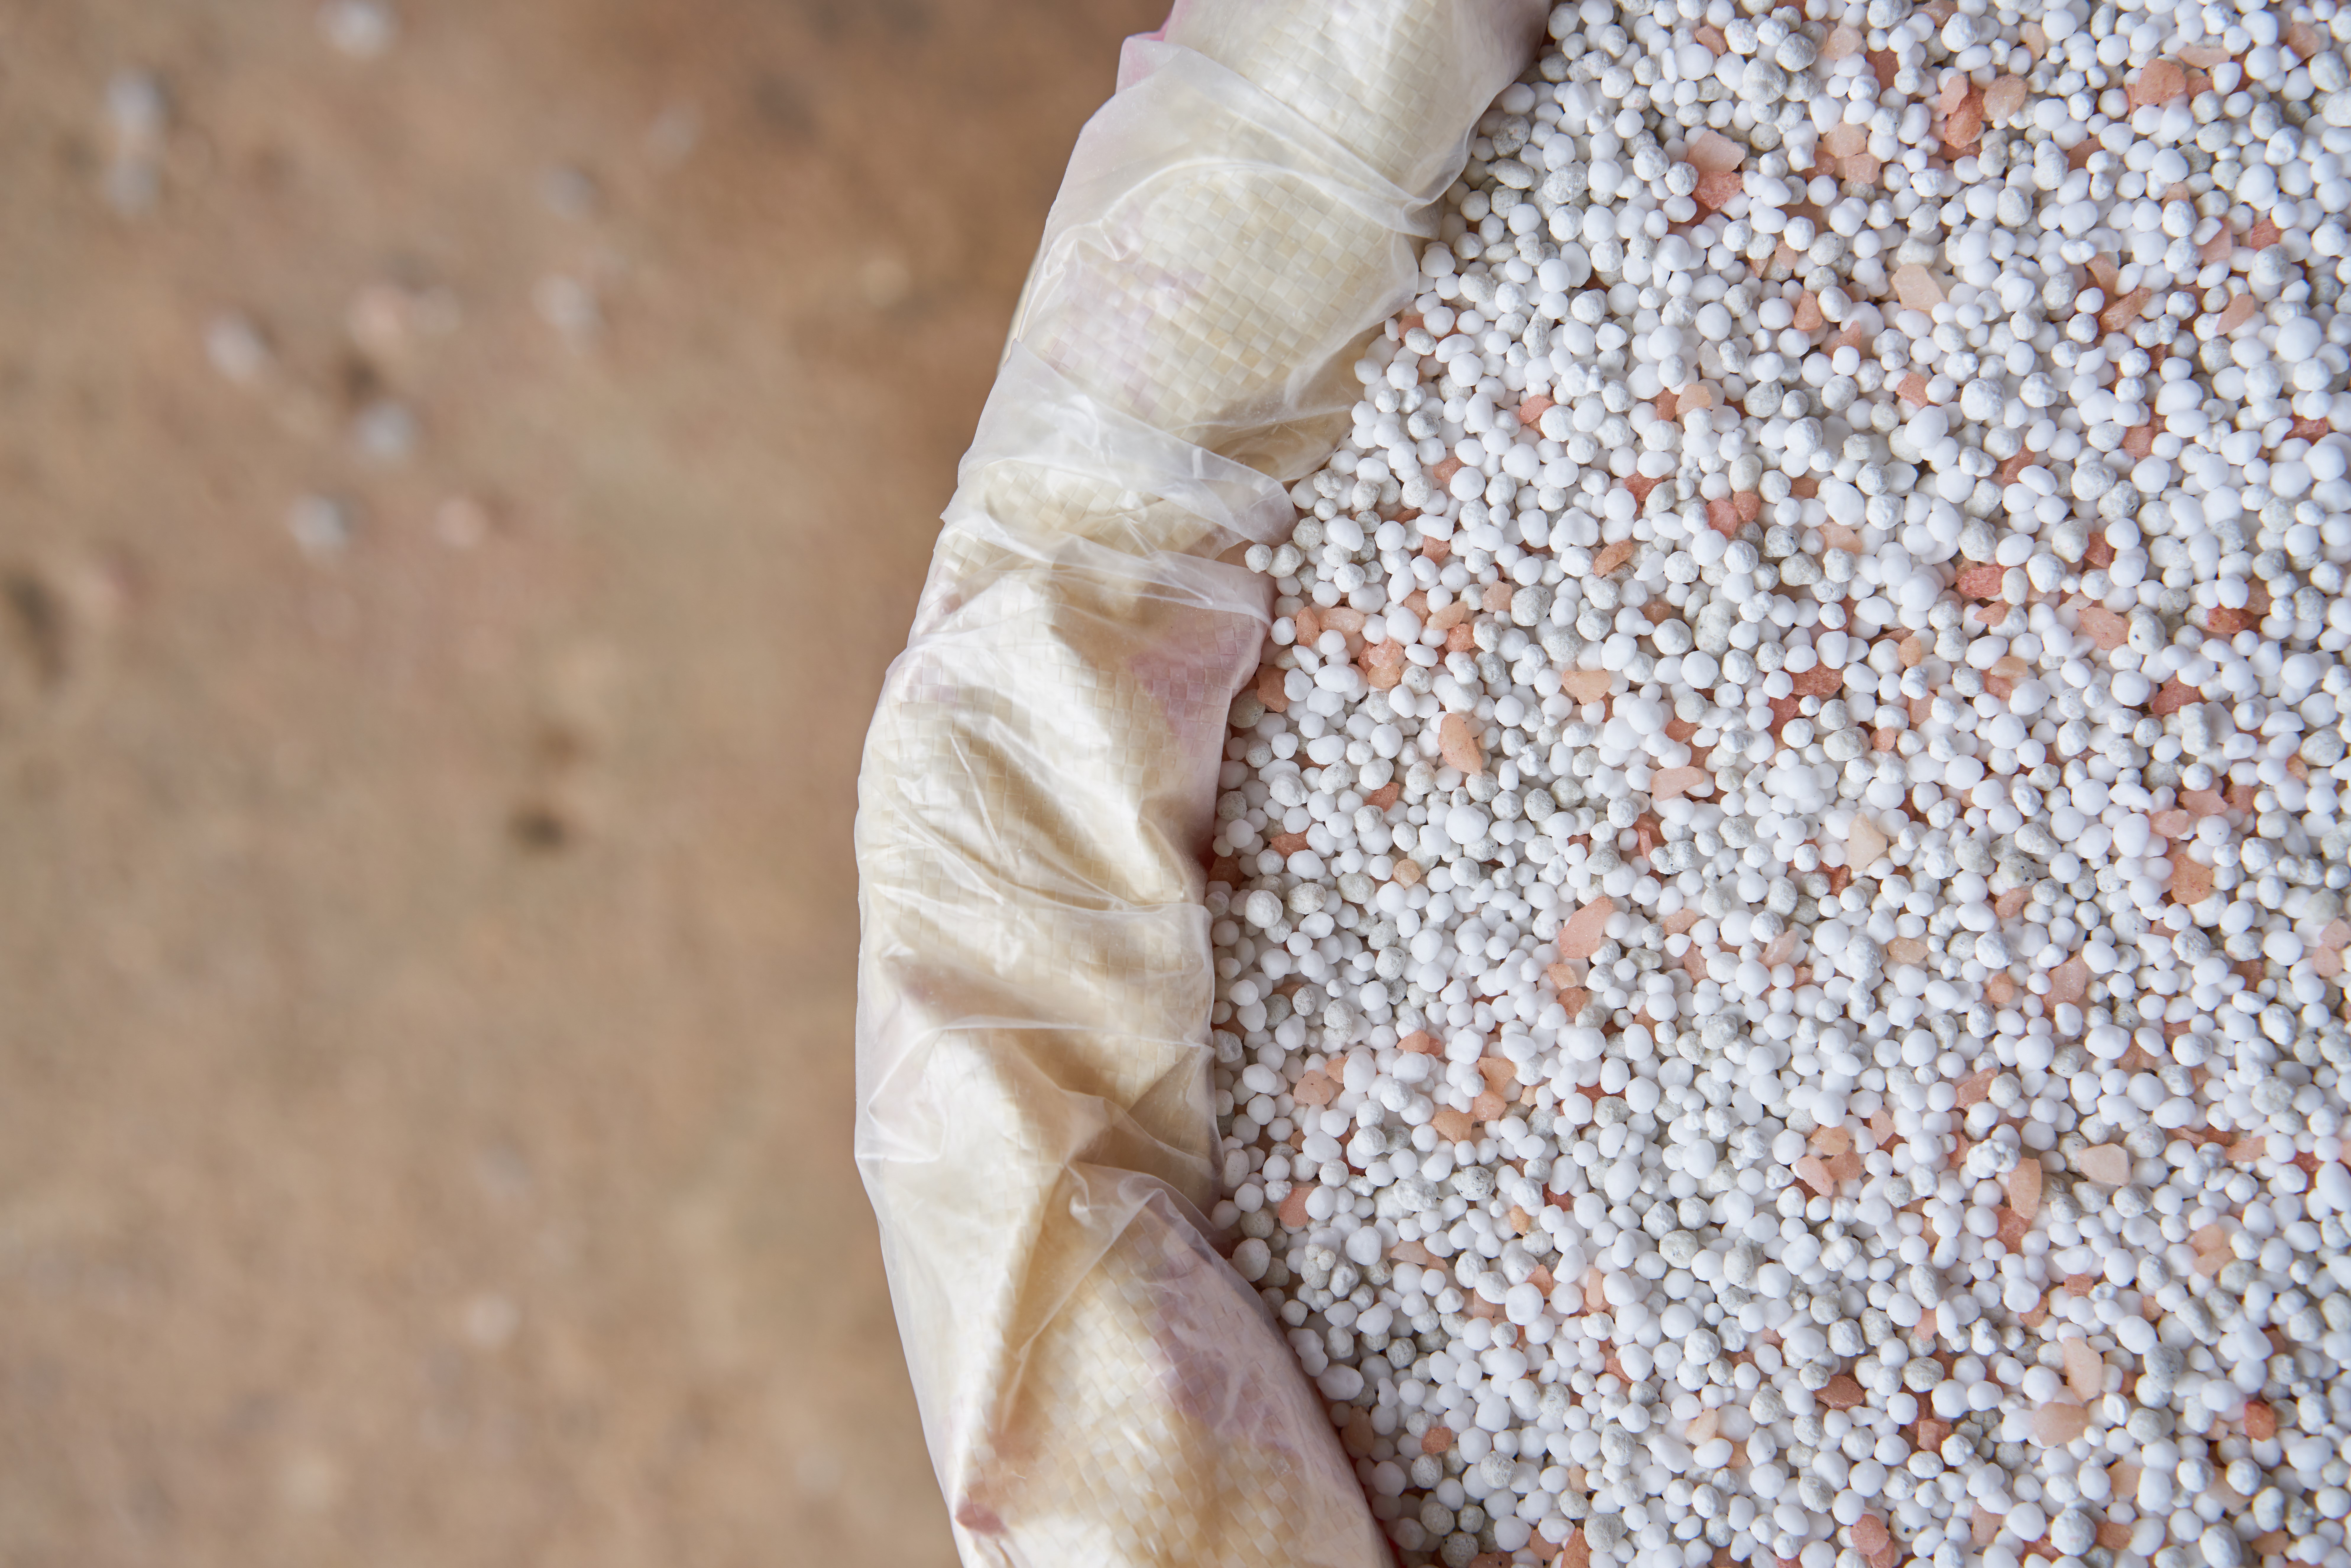 Closeup of chemical fertilizer granules in an open sack